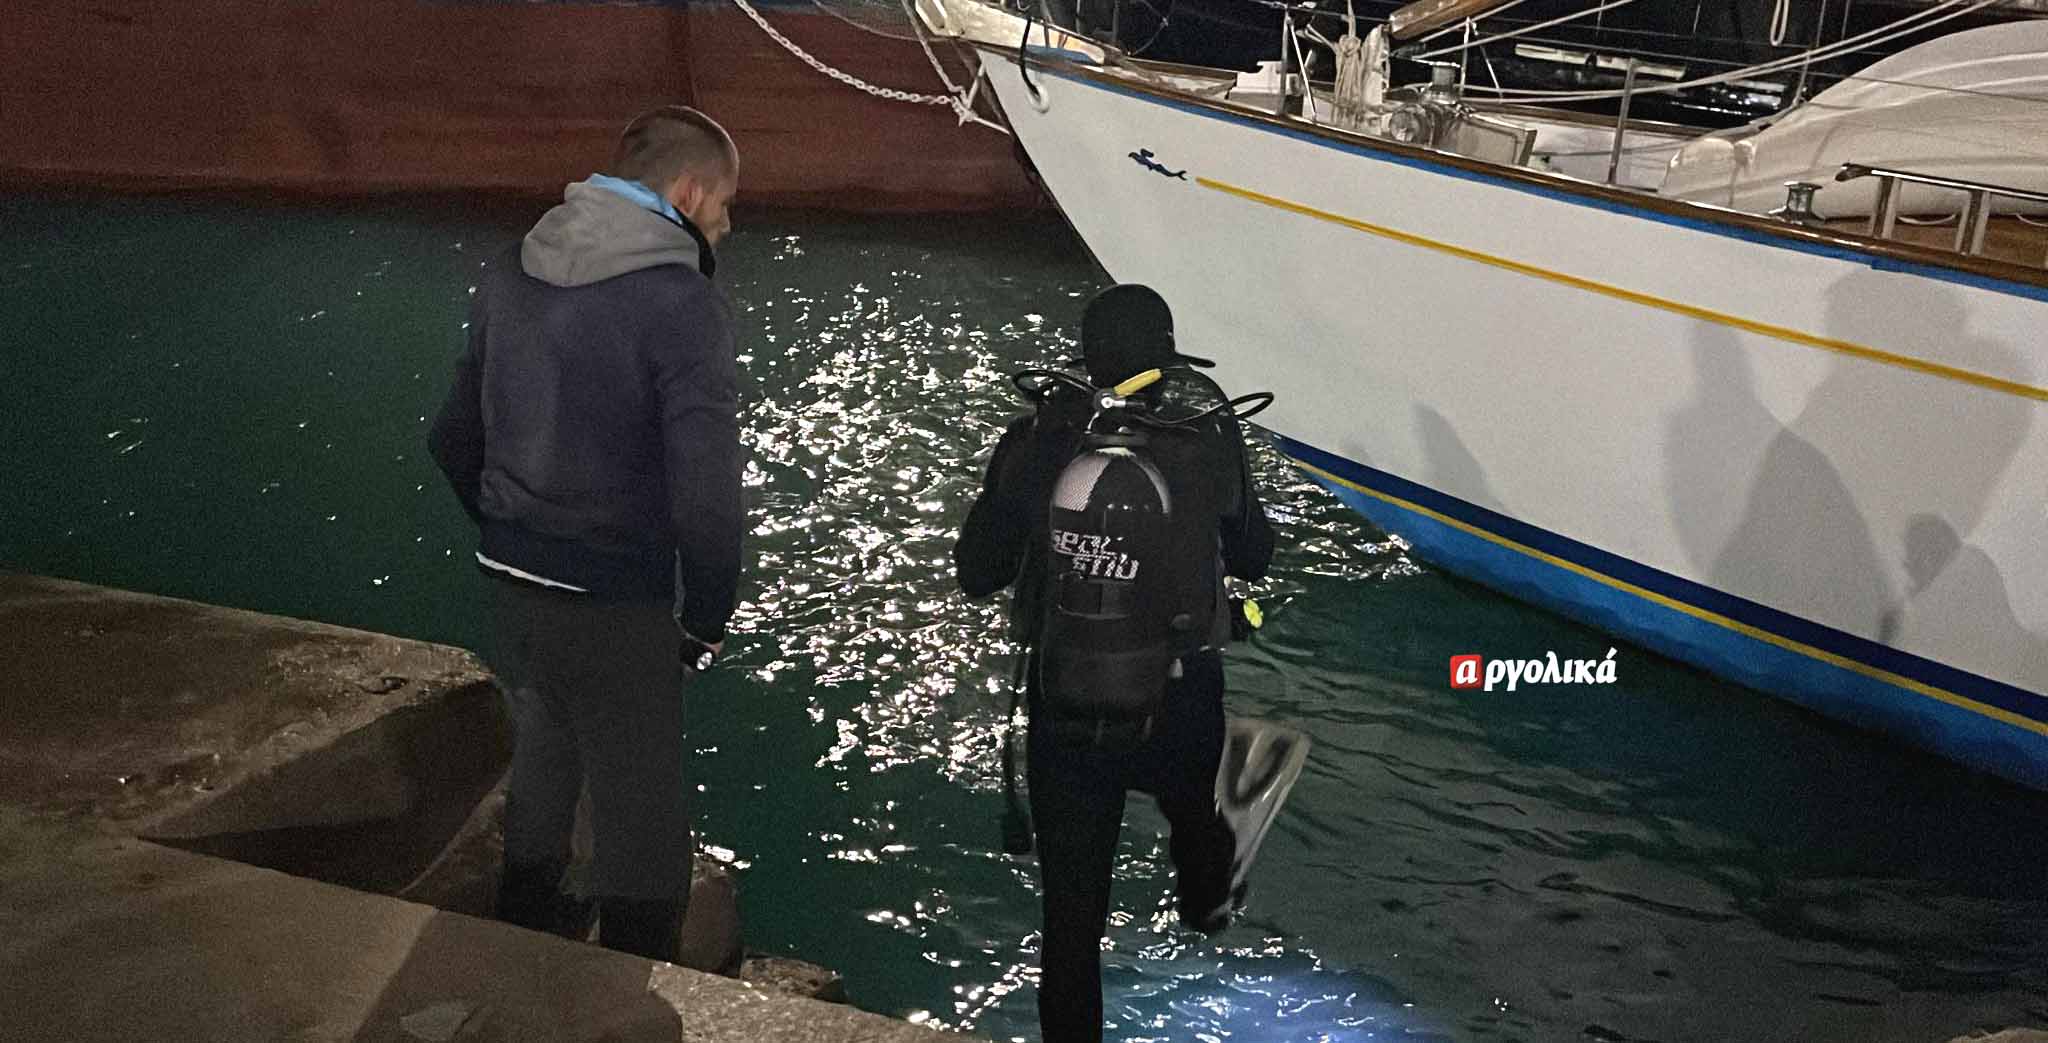 Λιμάνι Ναυπλίου: “Τρελό” φορτηγό πλοίο έπεσε σε άλλα σκάφη